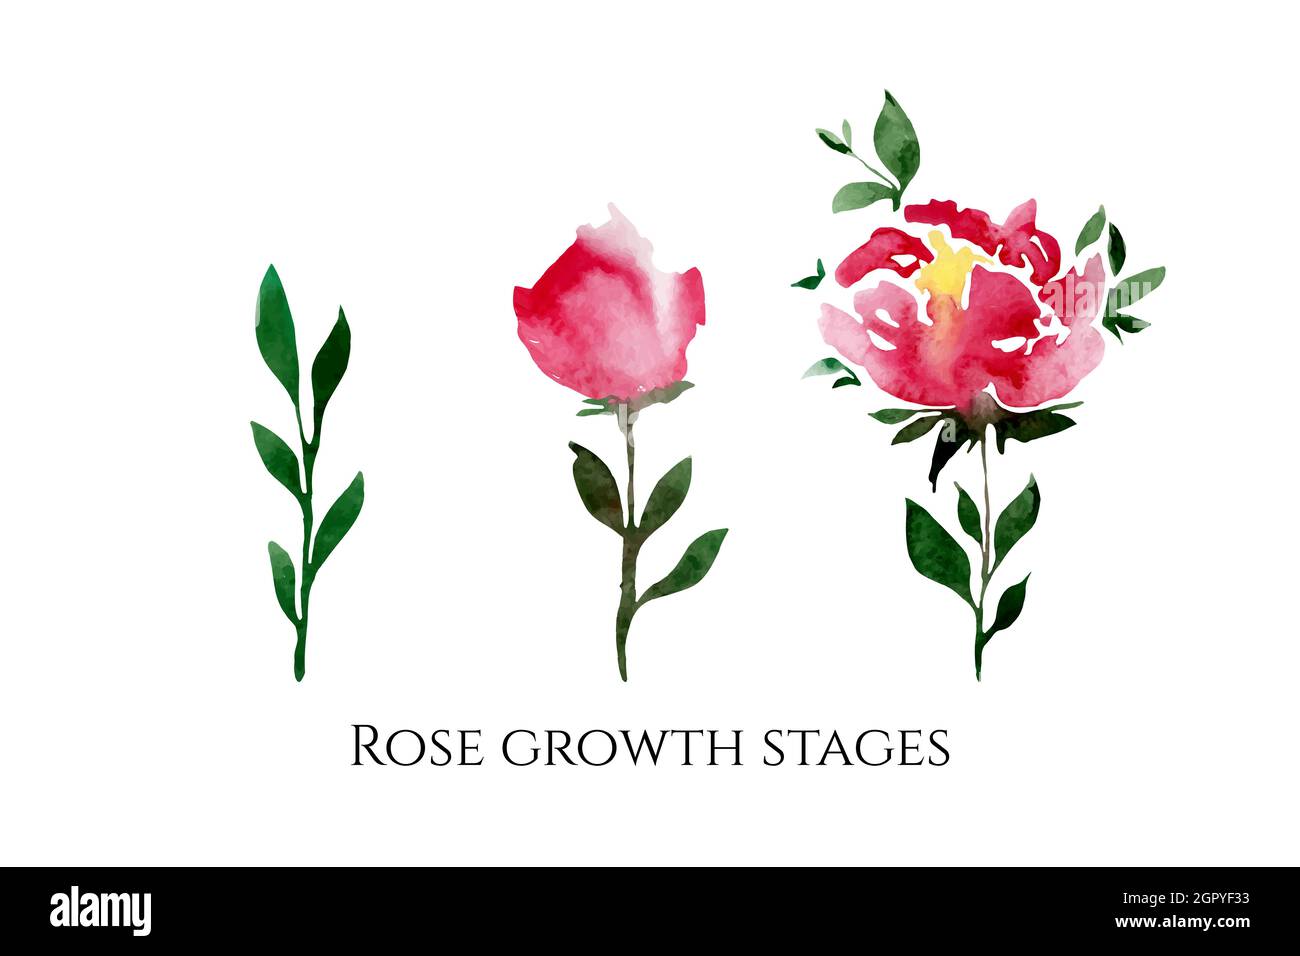 Set von Vektor-Illustrationen von Rosen bunten Blumen mit einer Inschrift. Wachstumsphasen der Rose. Stock Vektor